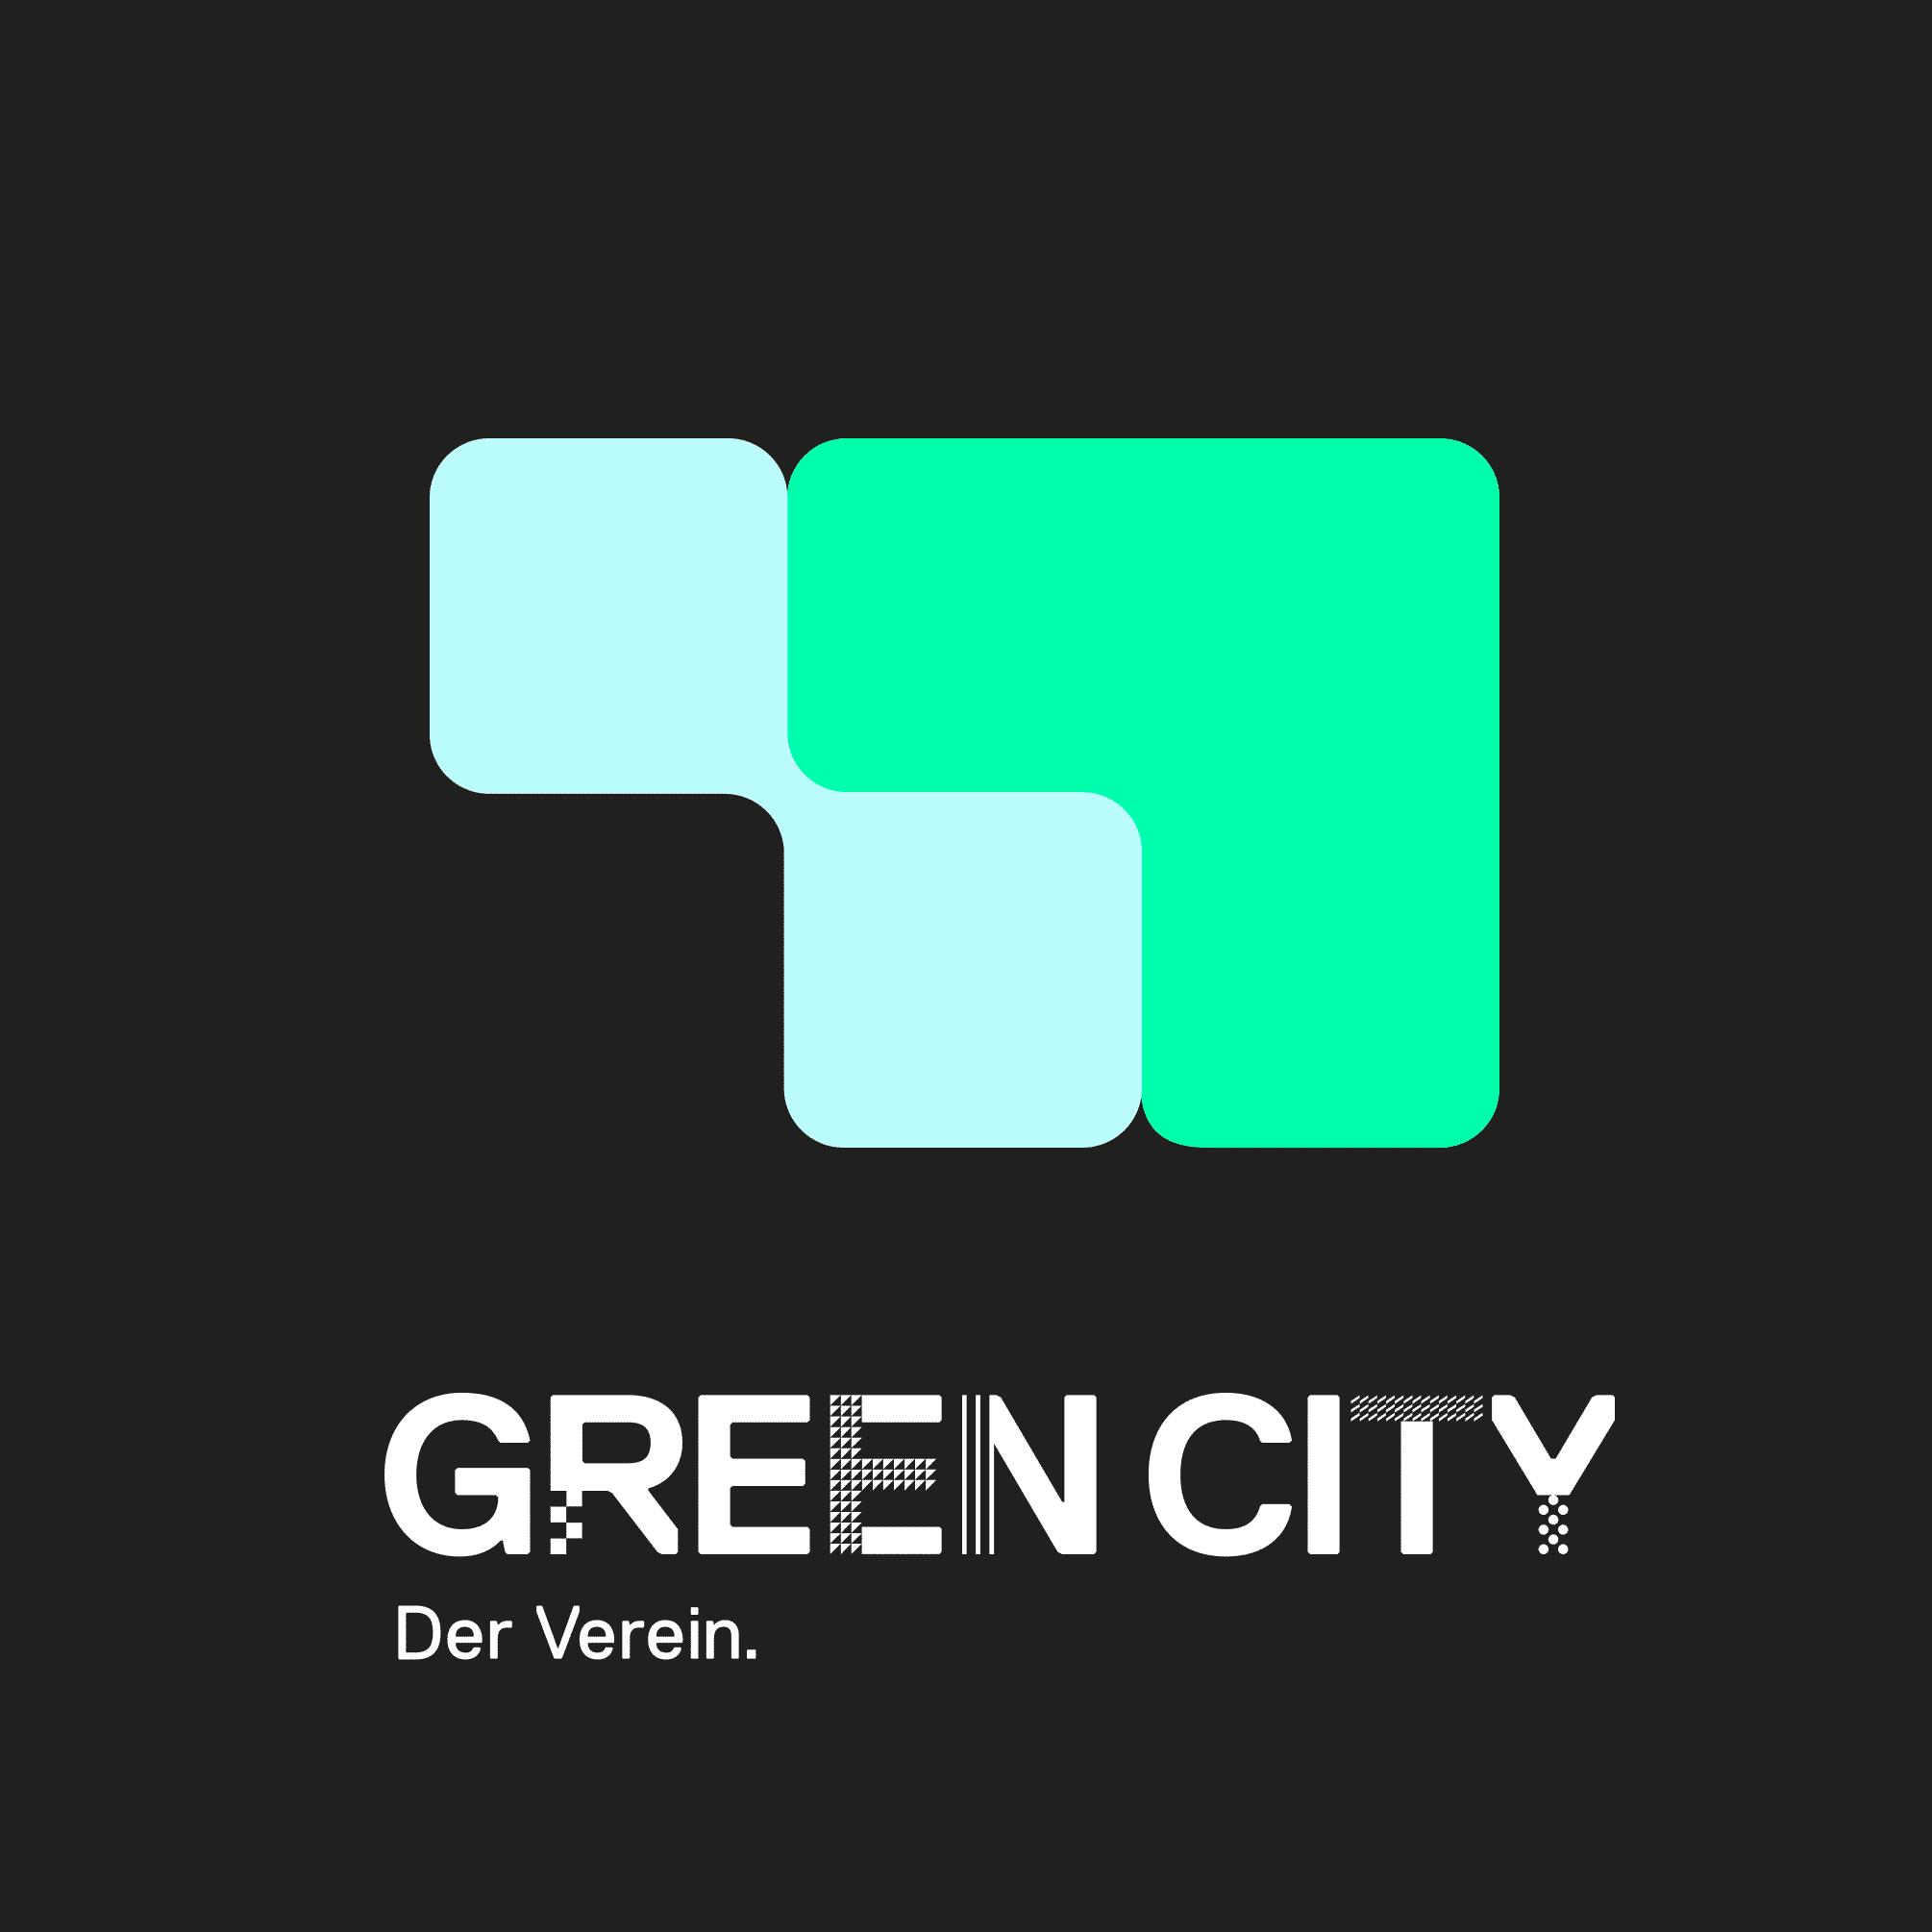 Green city Der Verein